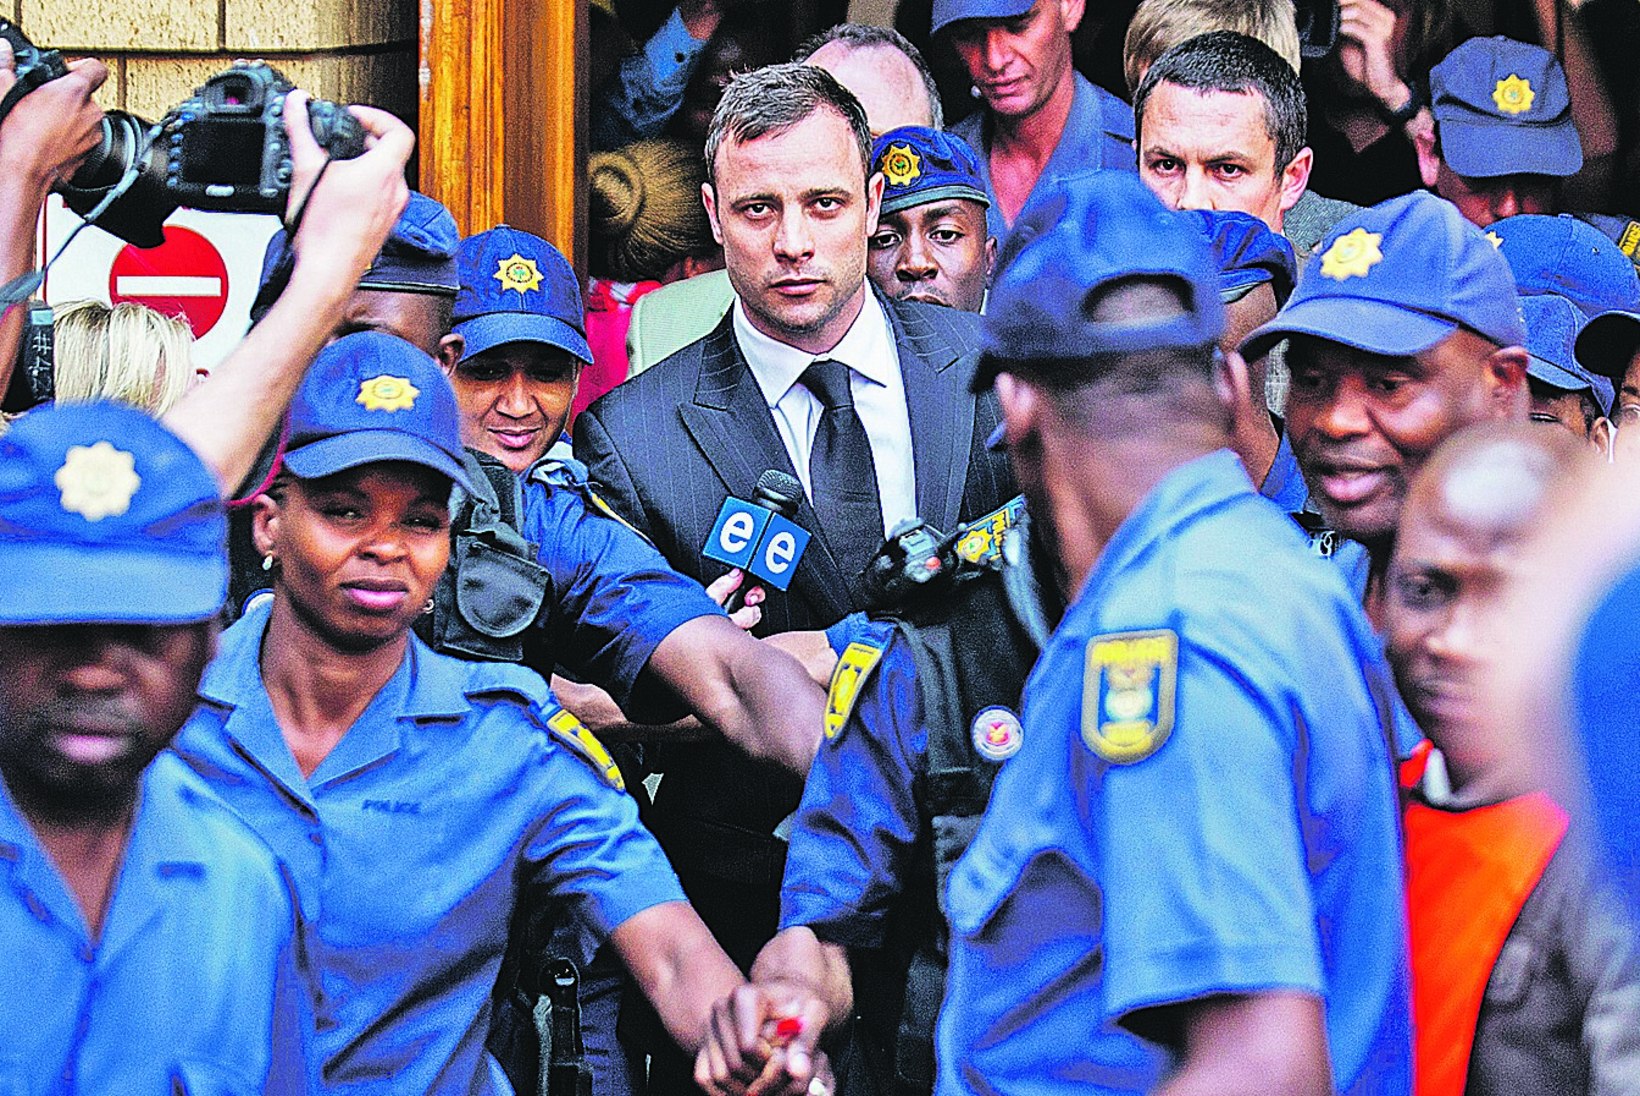 Kas Pistorius läheb üldse vangi?